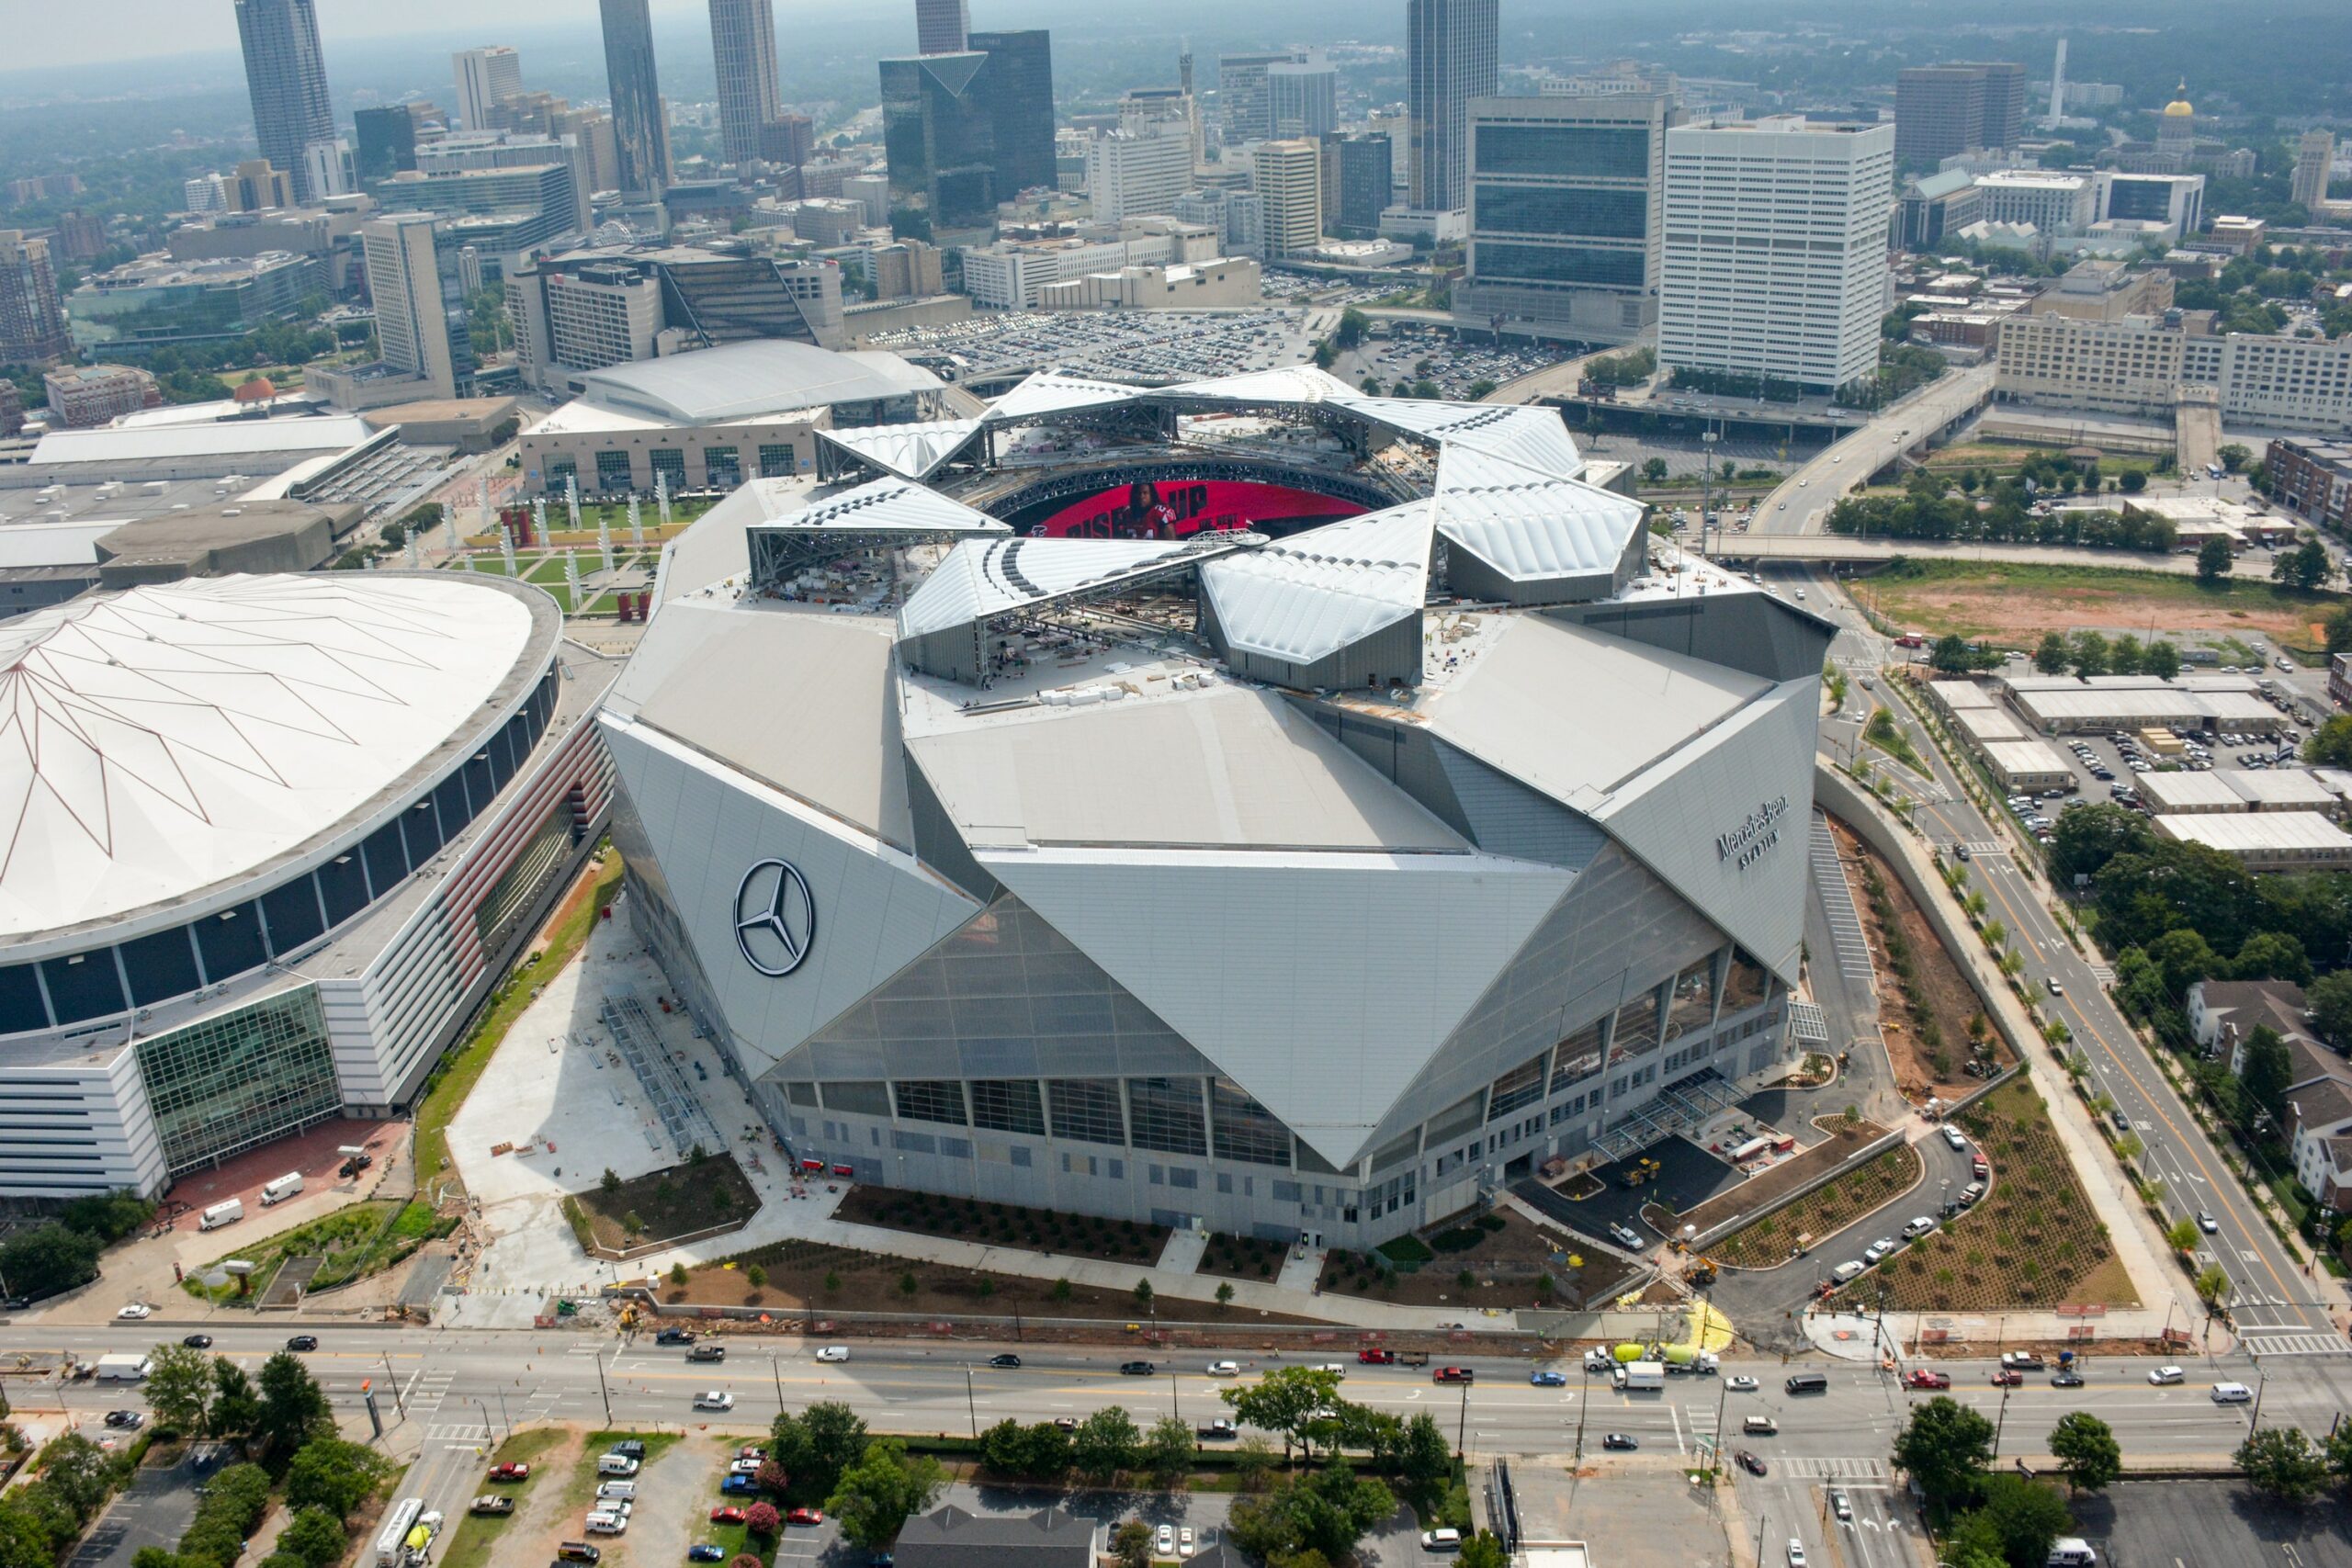 The Atlanta Falcons Stadium Design, Capacity, And History